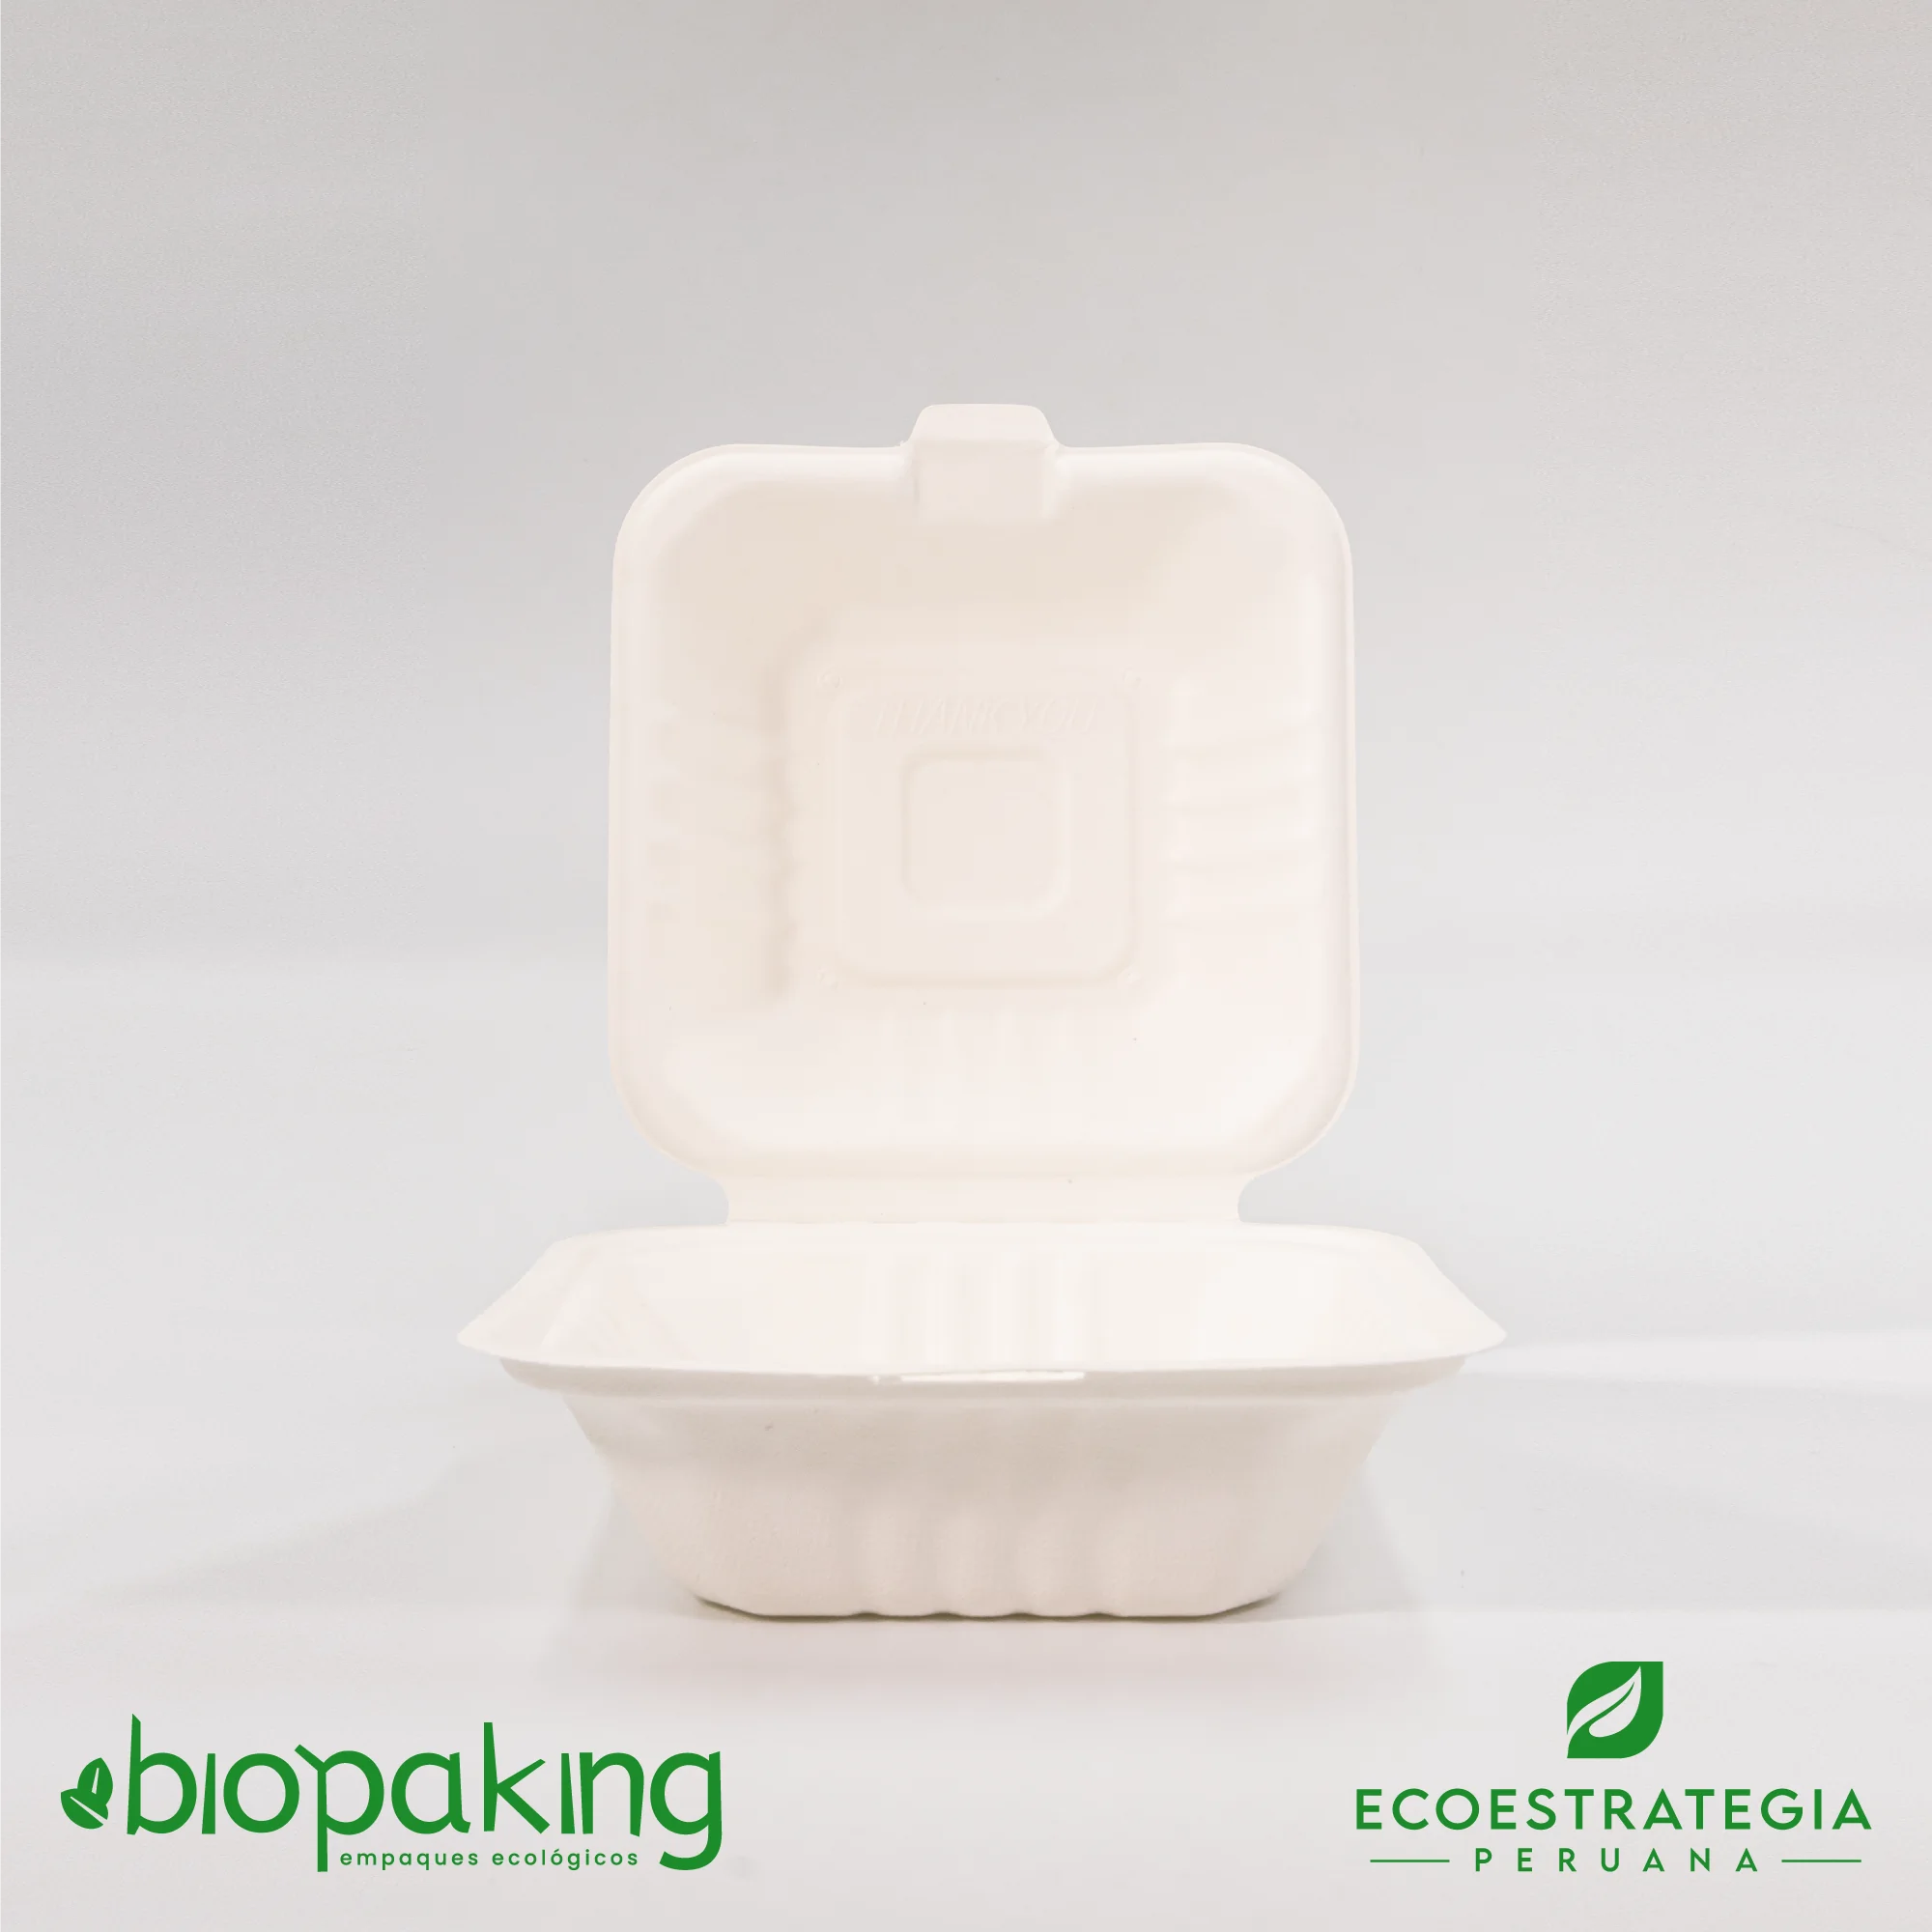 Este envase CT4 pequeño tiene una capacidad de 480ml. Producto de materiales biodegradables, hecho a base de fibra de caña de azúcar. Cotiza empaques y tapers